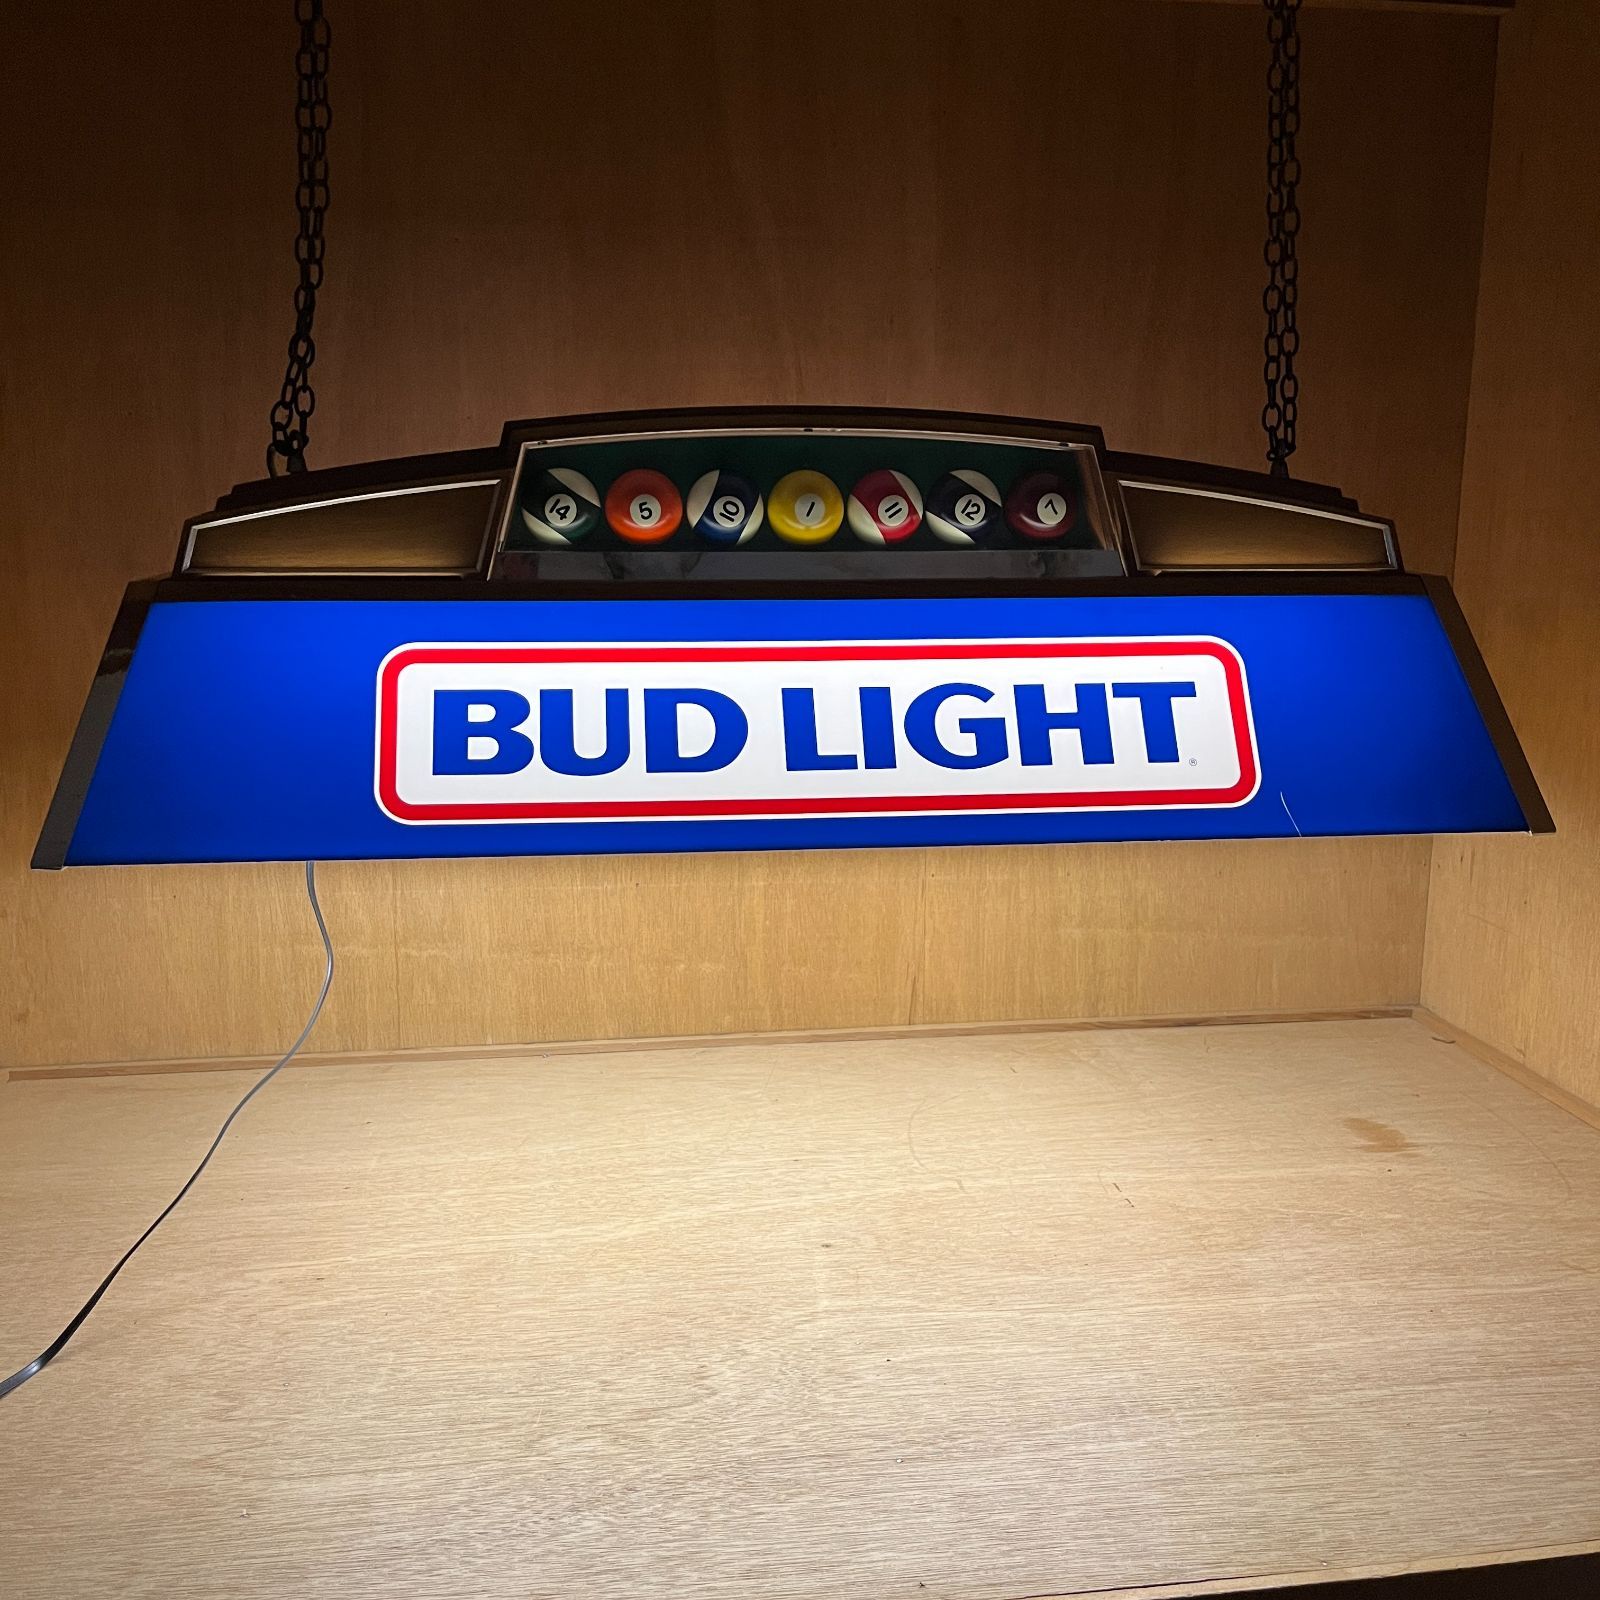 1987年 BUDLIGHT バドライト プールバーライト ヴィンテージ 照明 